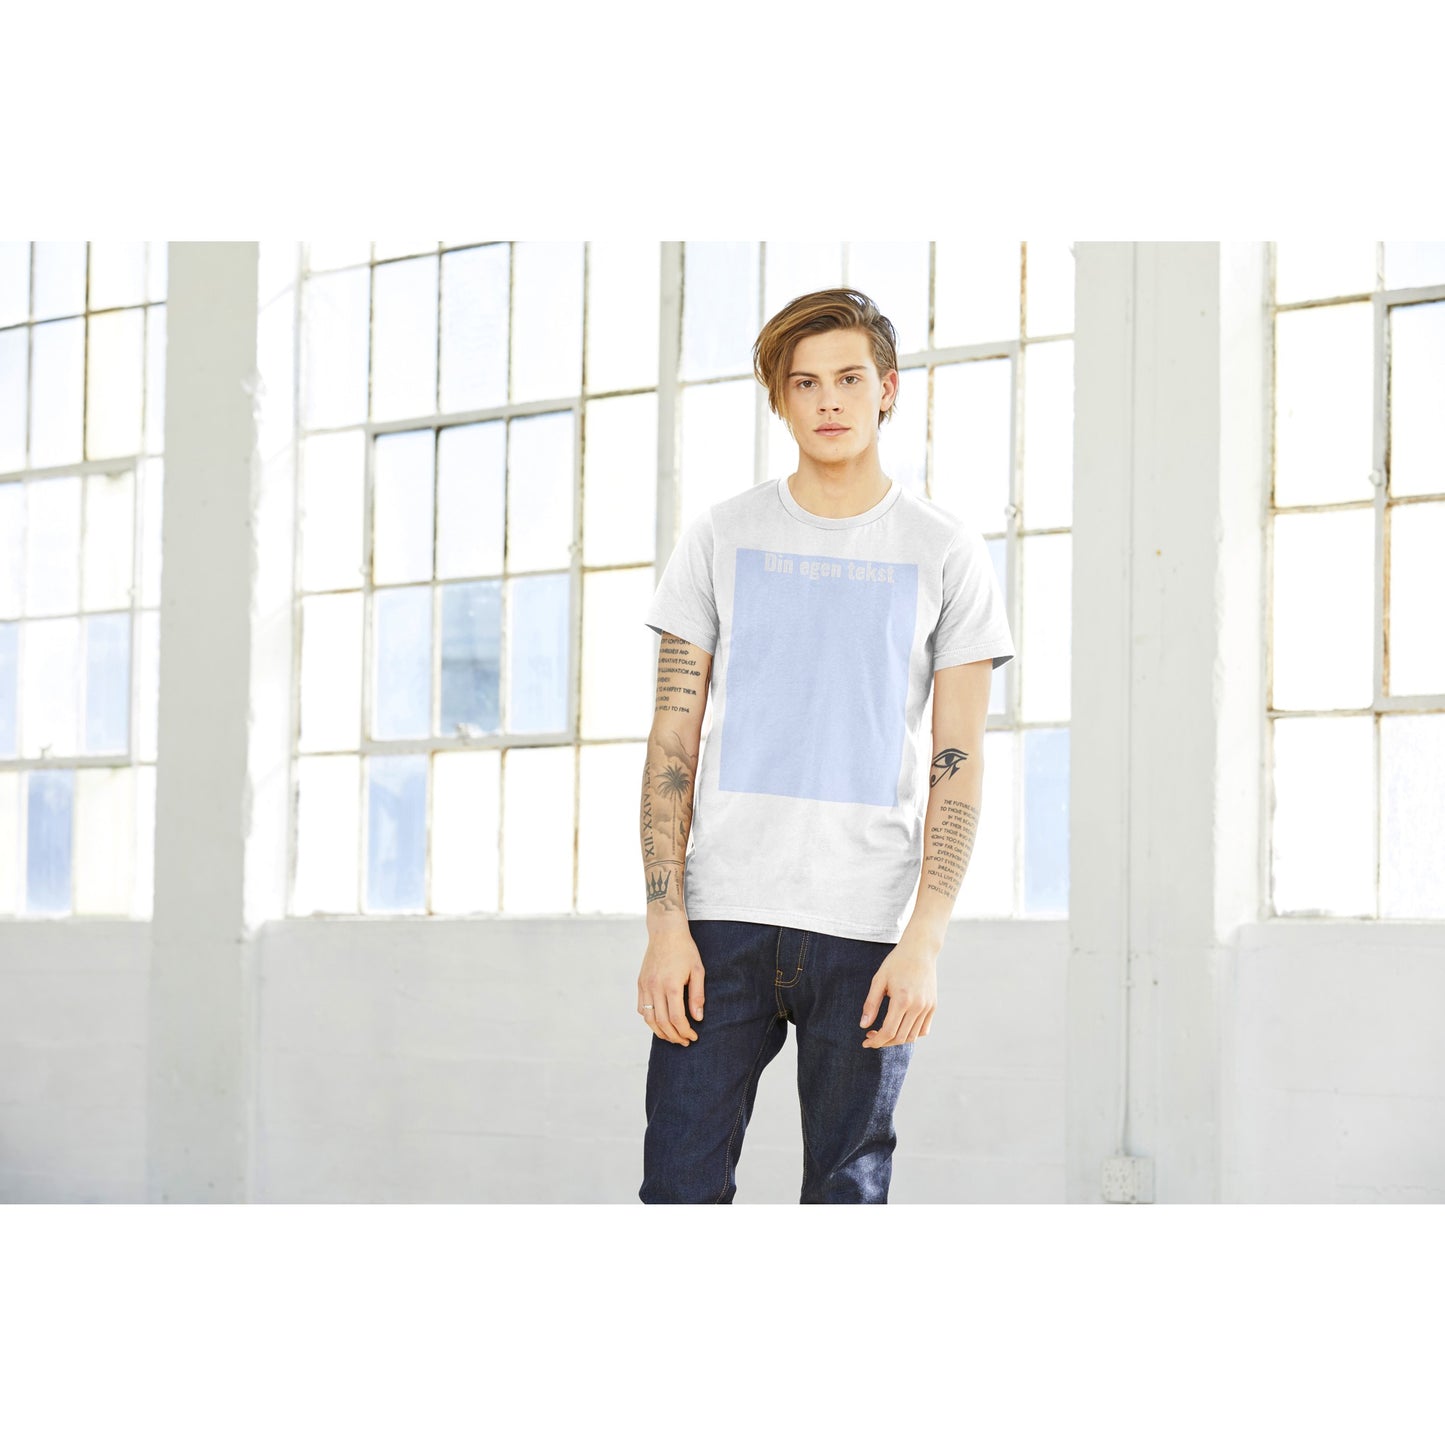 Design Selv T-shirt (billede eller (HVID) tekst ) Ung fyr iført Premium Unisex hvid T-shirt  med tekst og billede boks på t-shirt